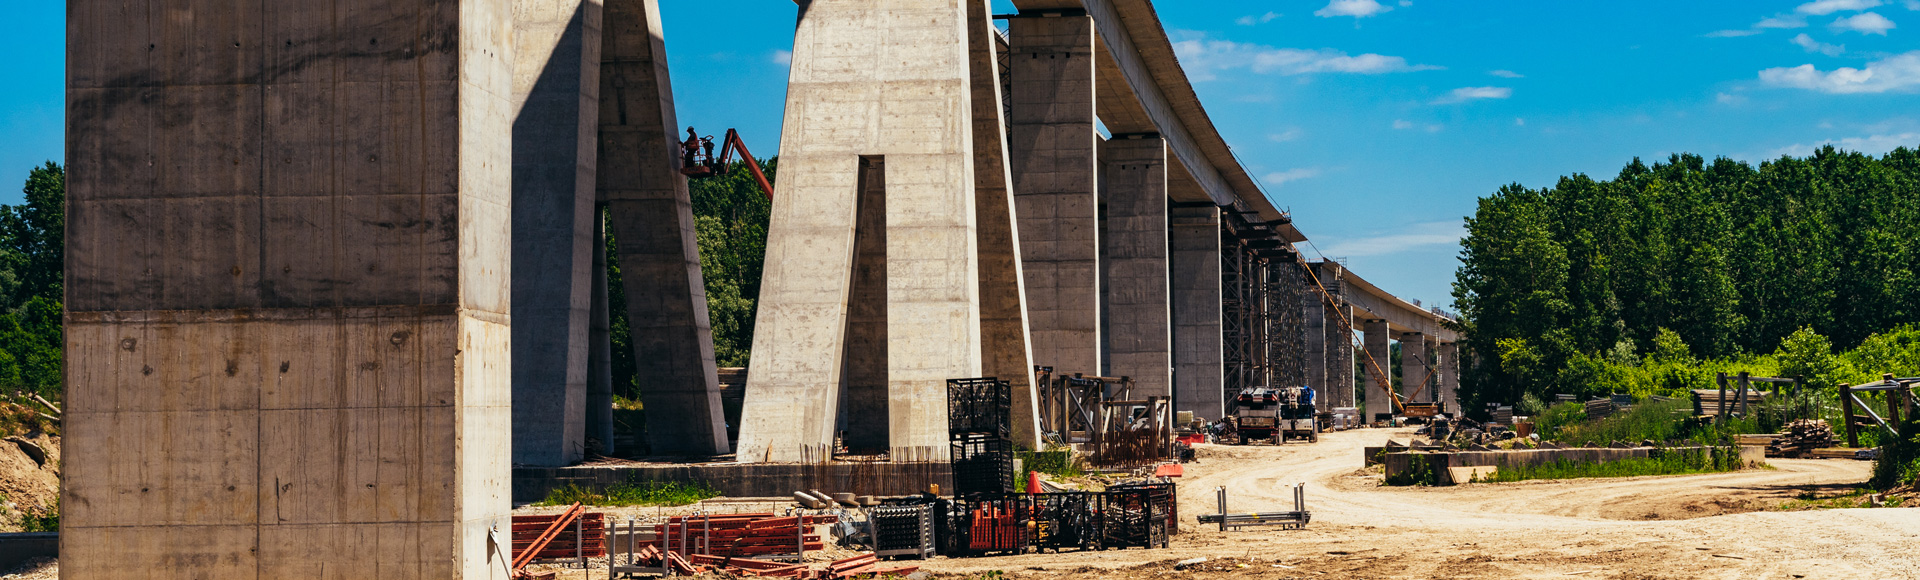 Izgradnja Vijadukta u Čortanovcima